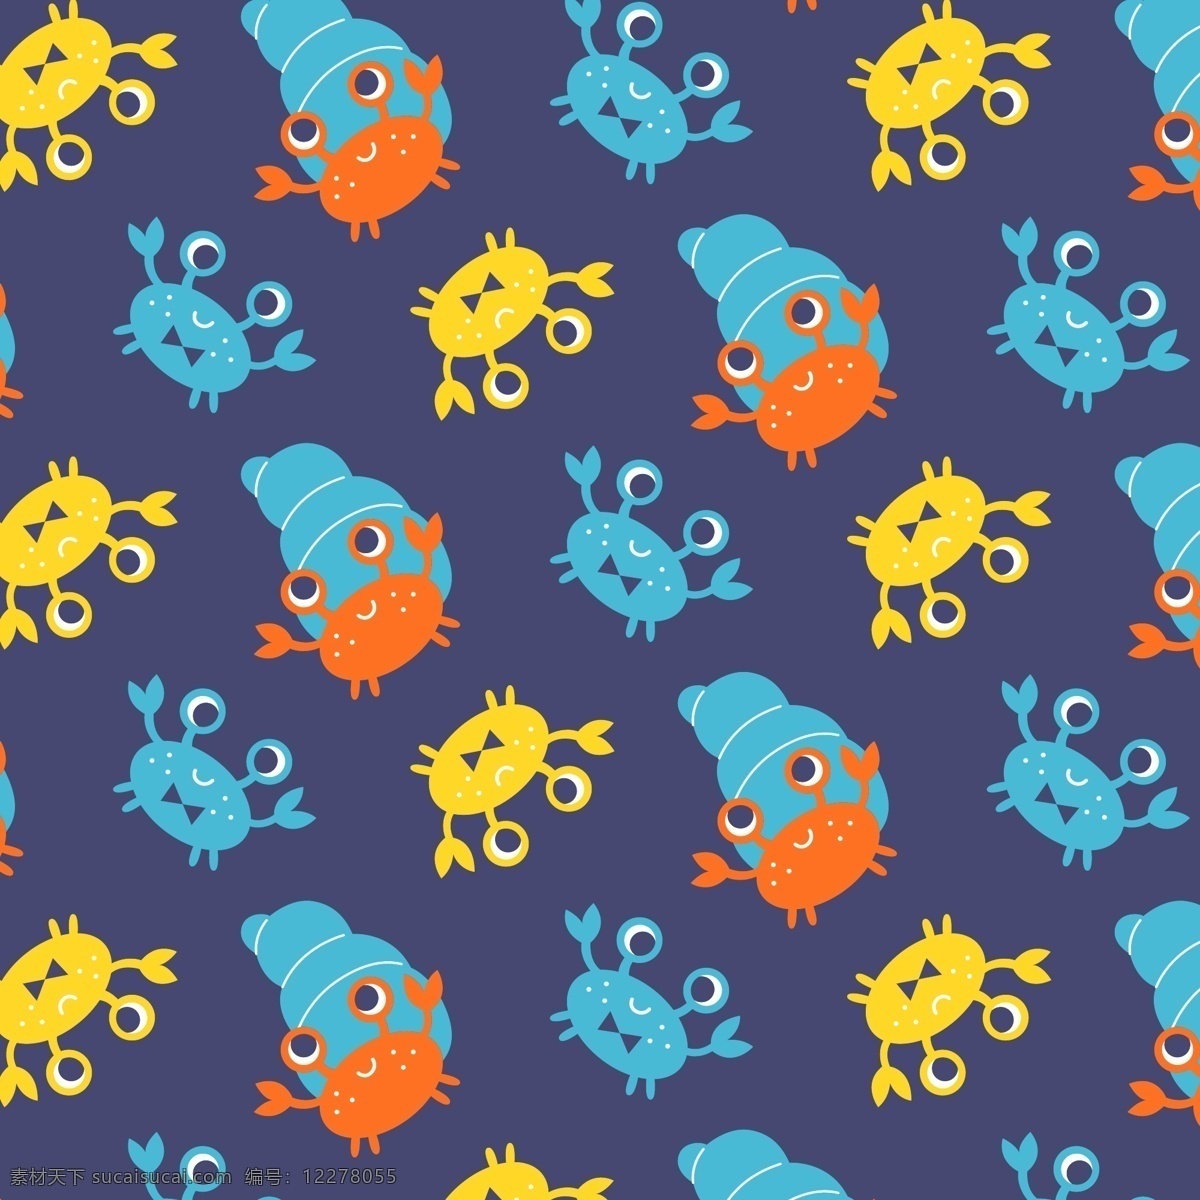 螃蟹 卡通素材 卡通 婴童 卡通花型 图案 螺丝 海螺 矢量 童装 服装面料 热转印 矢量图案 背景底纹 海洋系列 生物世界 海洋生物